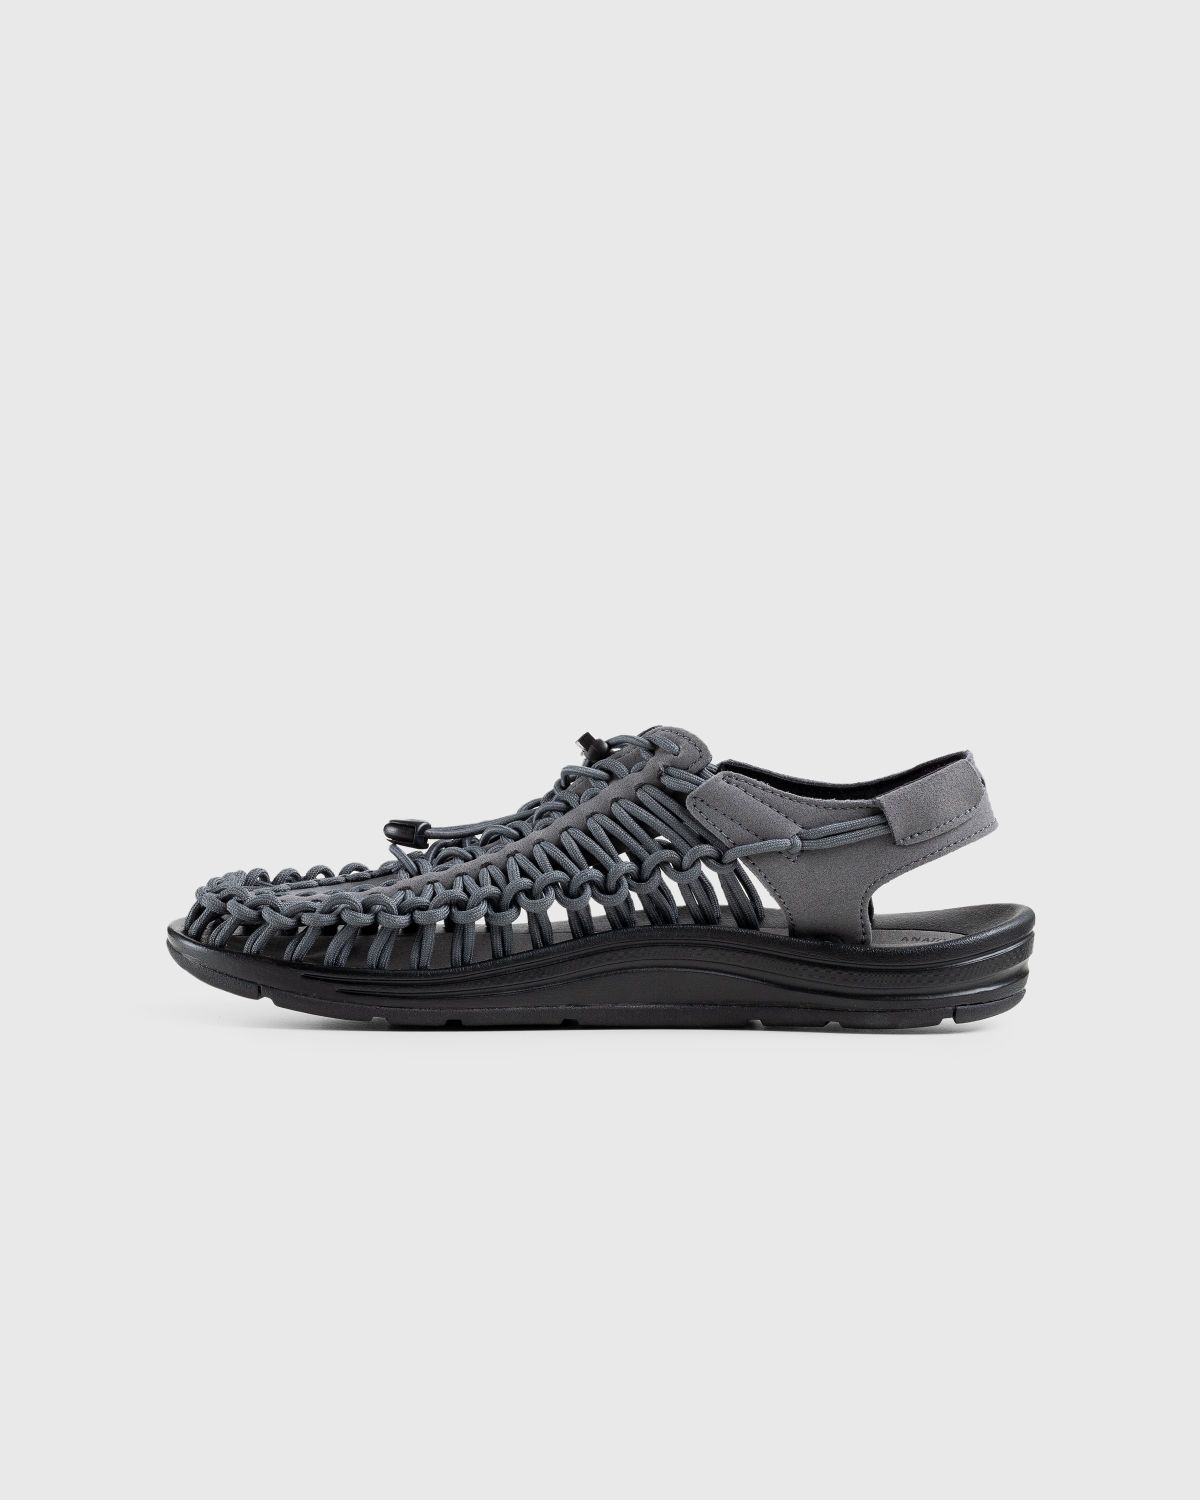 Keen – Uneek Magnet/Black - Sandals & Slides - Grey - Image 2